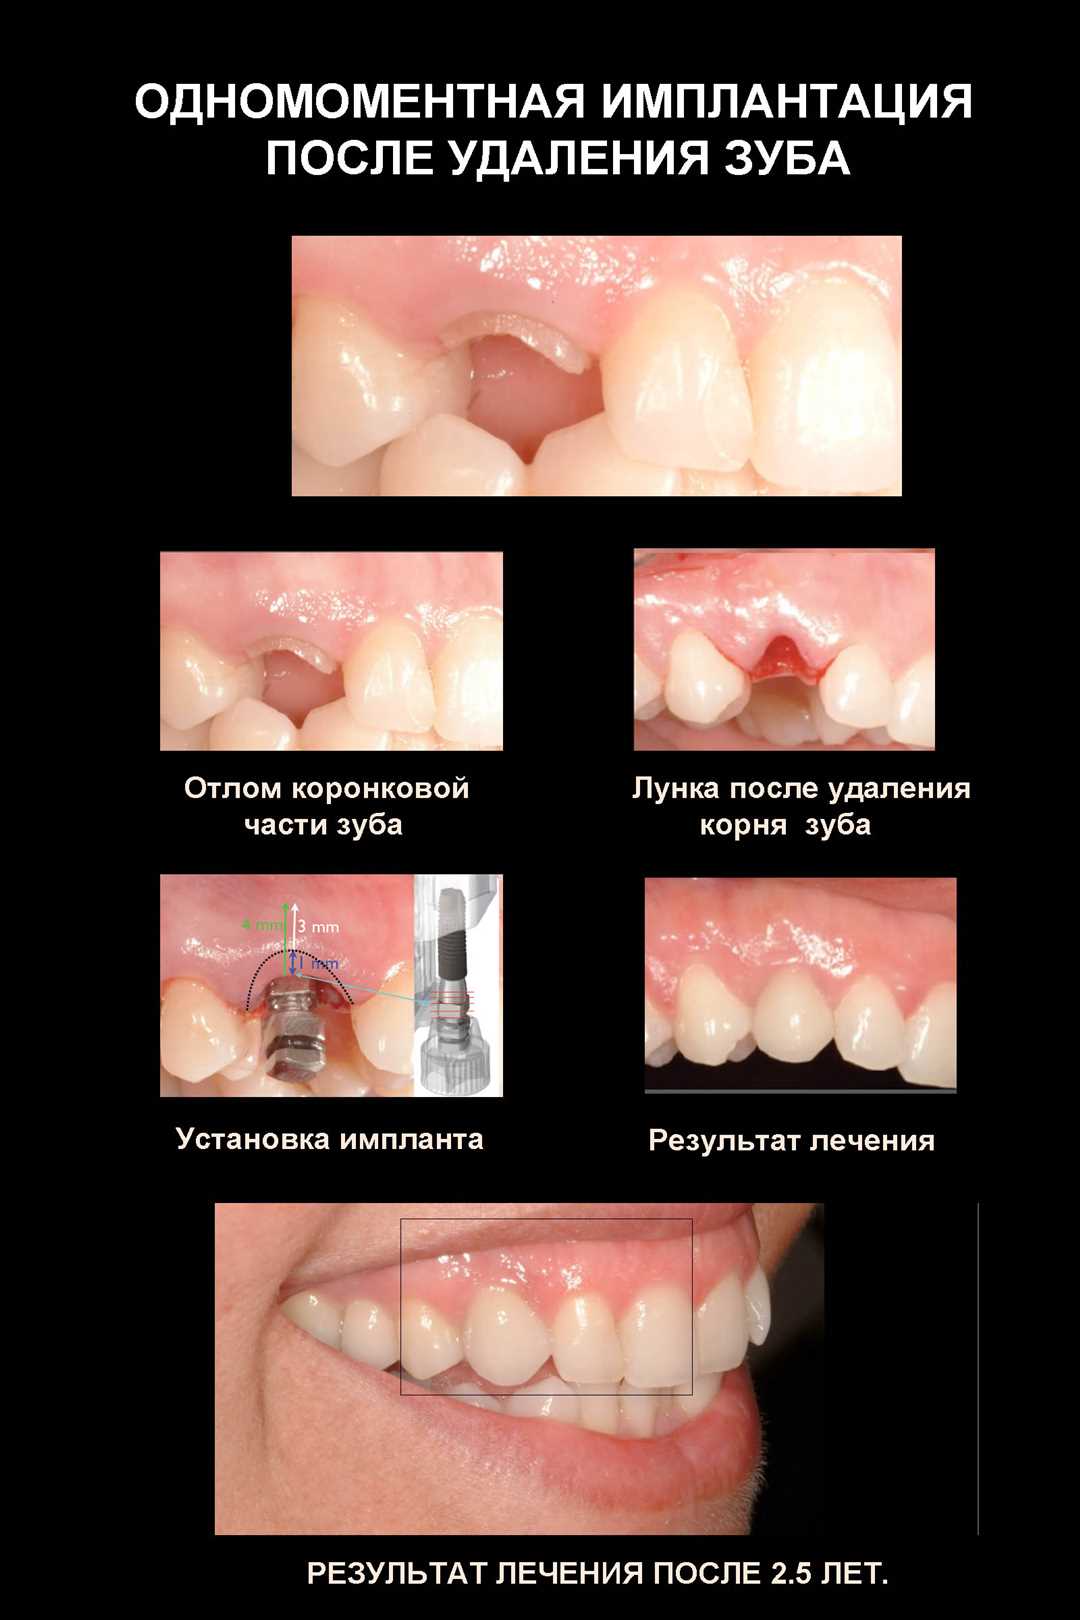 Одномоментное удаление зуба — безболезненная процедура современной стоматологии